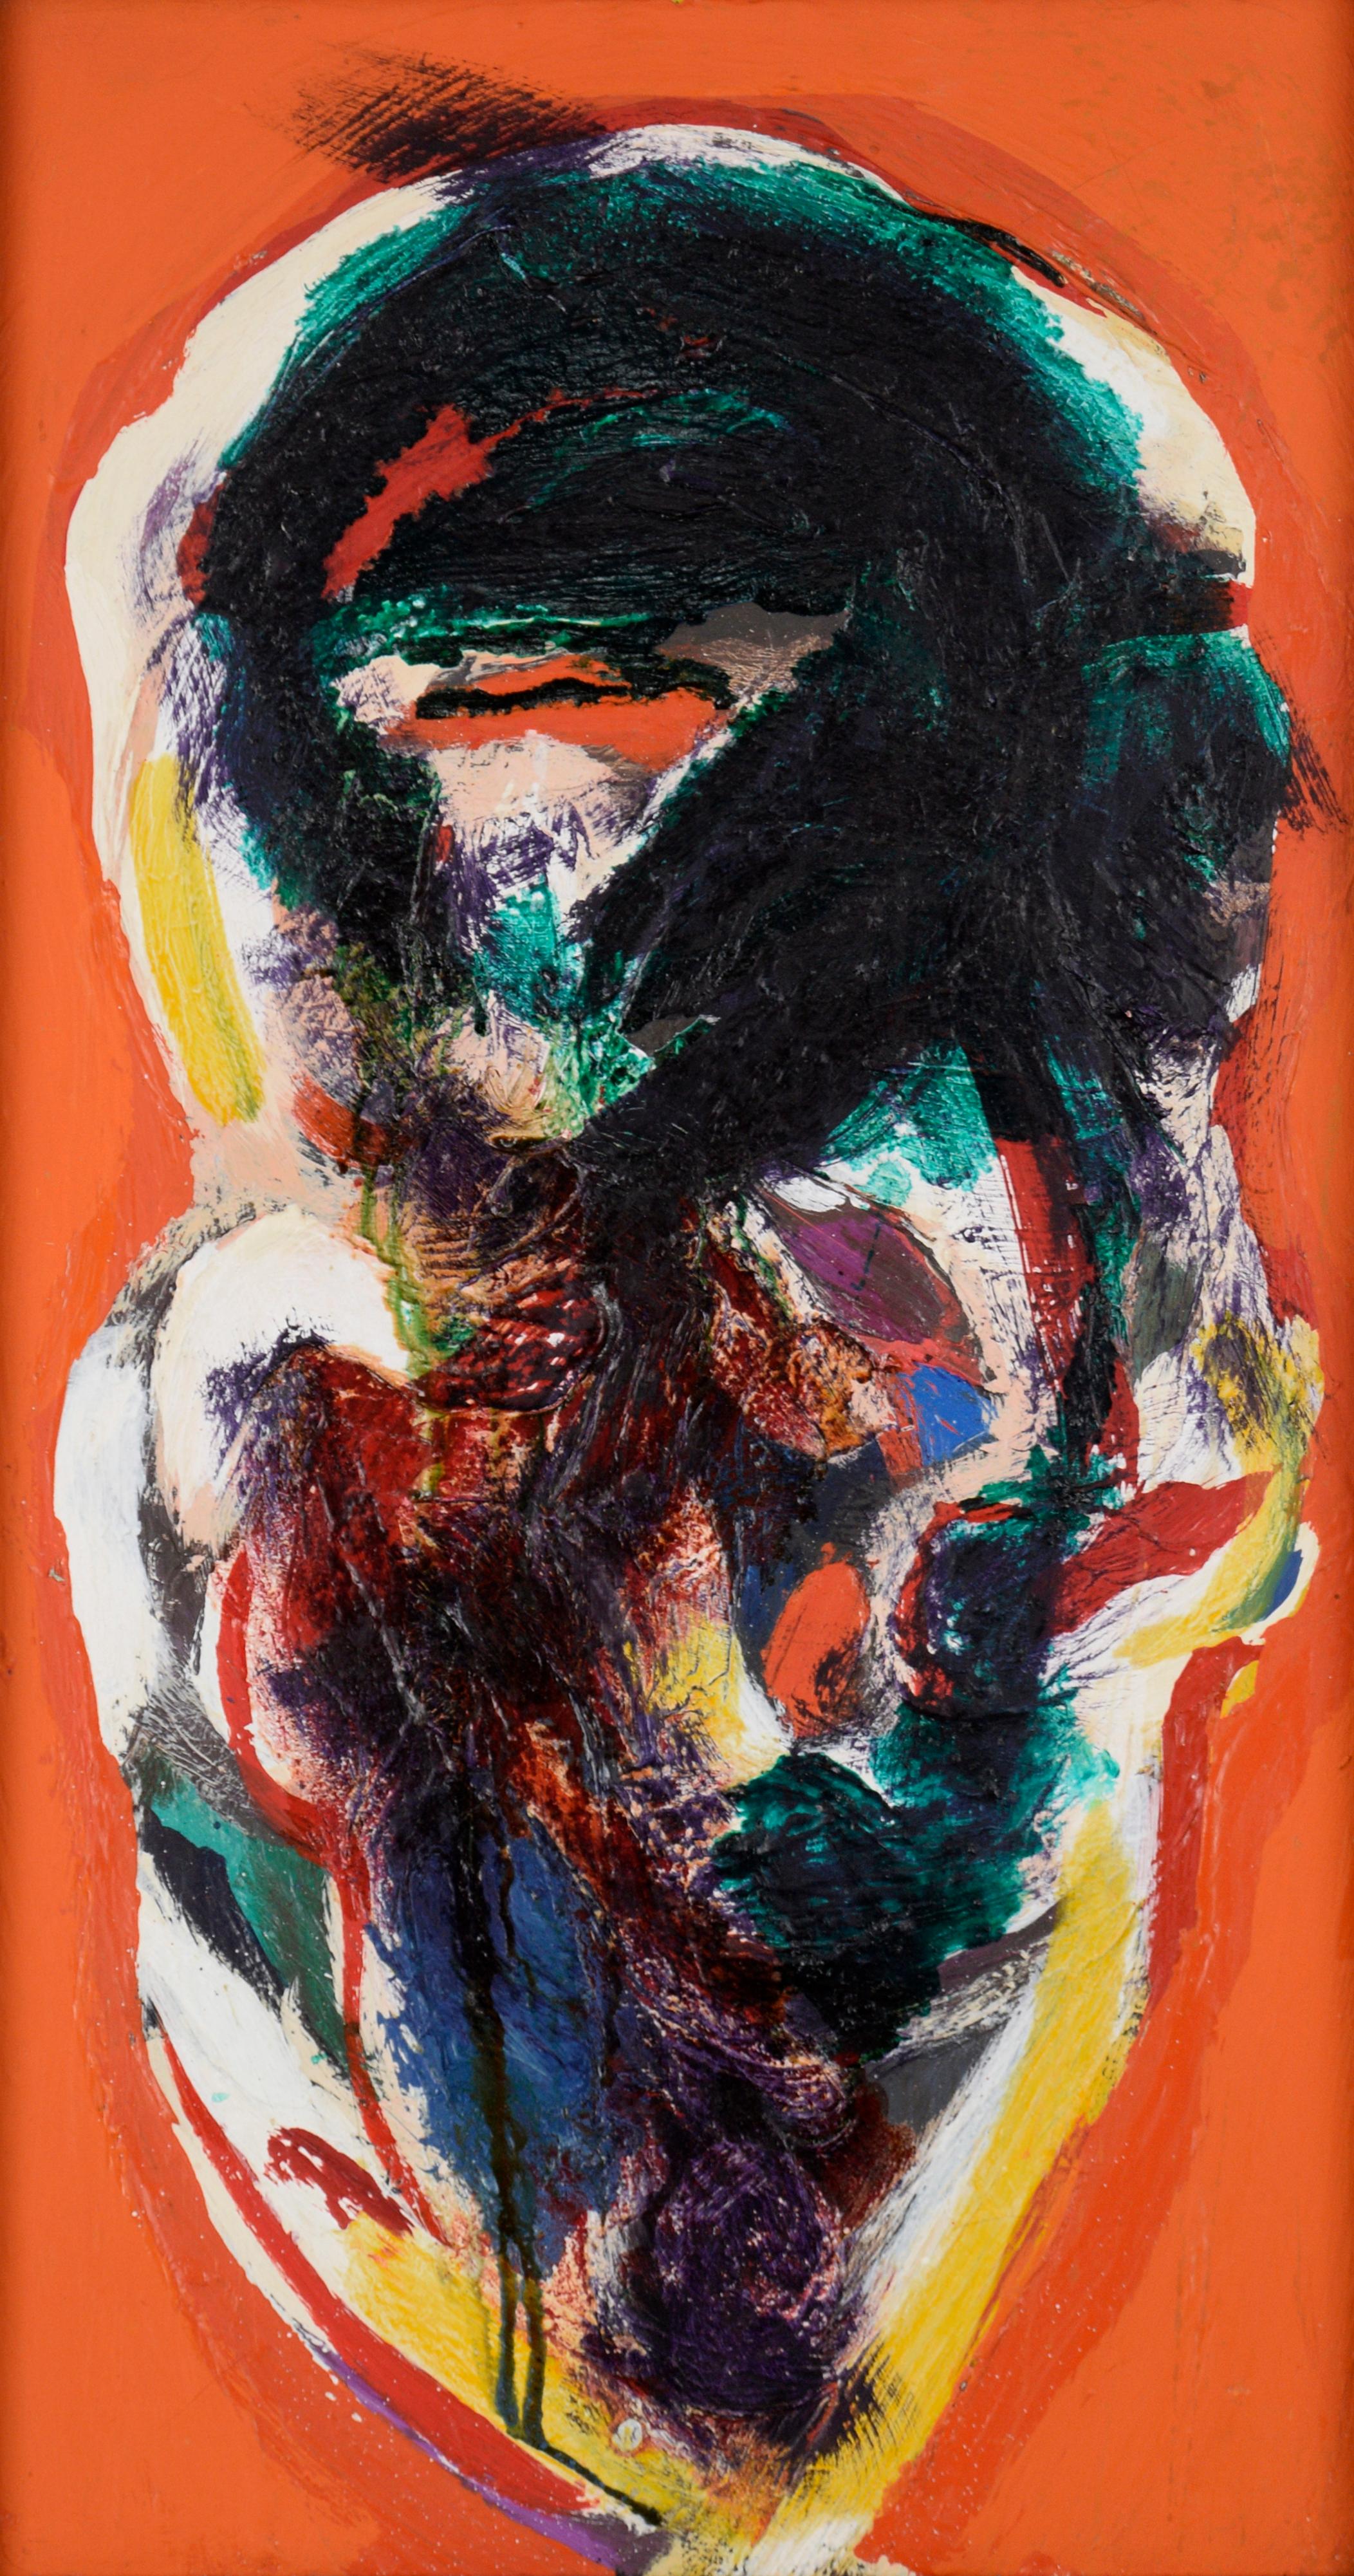 Abstrakte expressionistische Komposition auf einem orangefarbenen Feld - Öl auf Leinwand – Painting von Peter Witwer